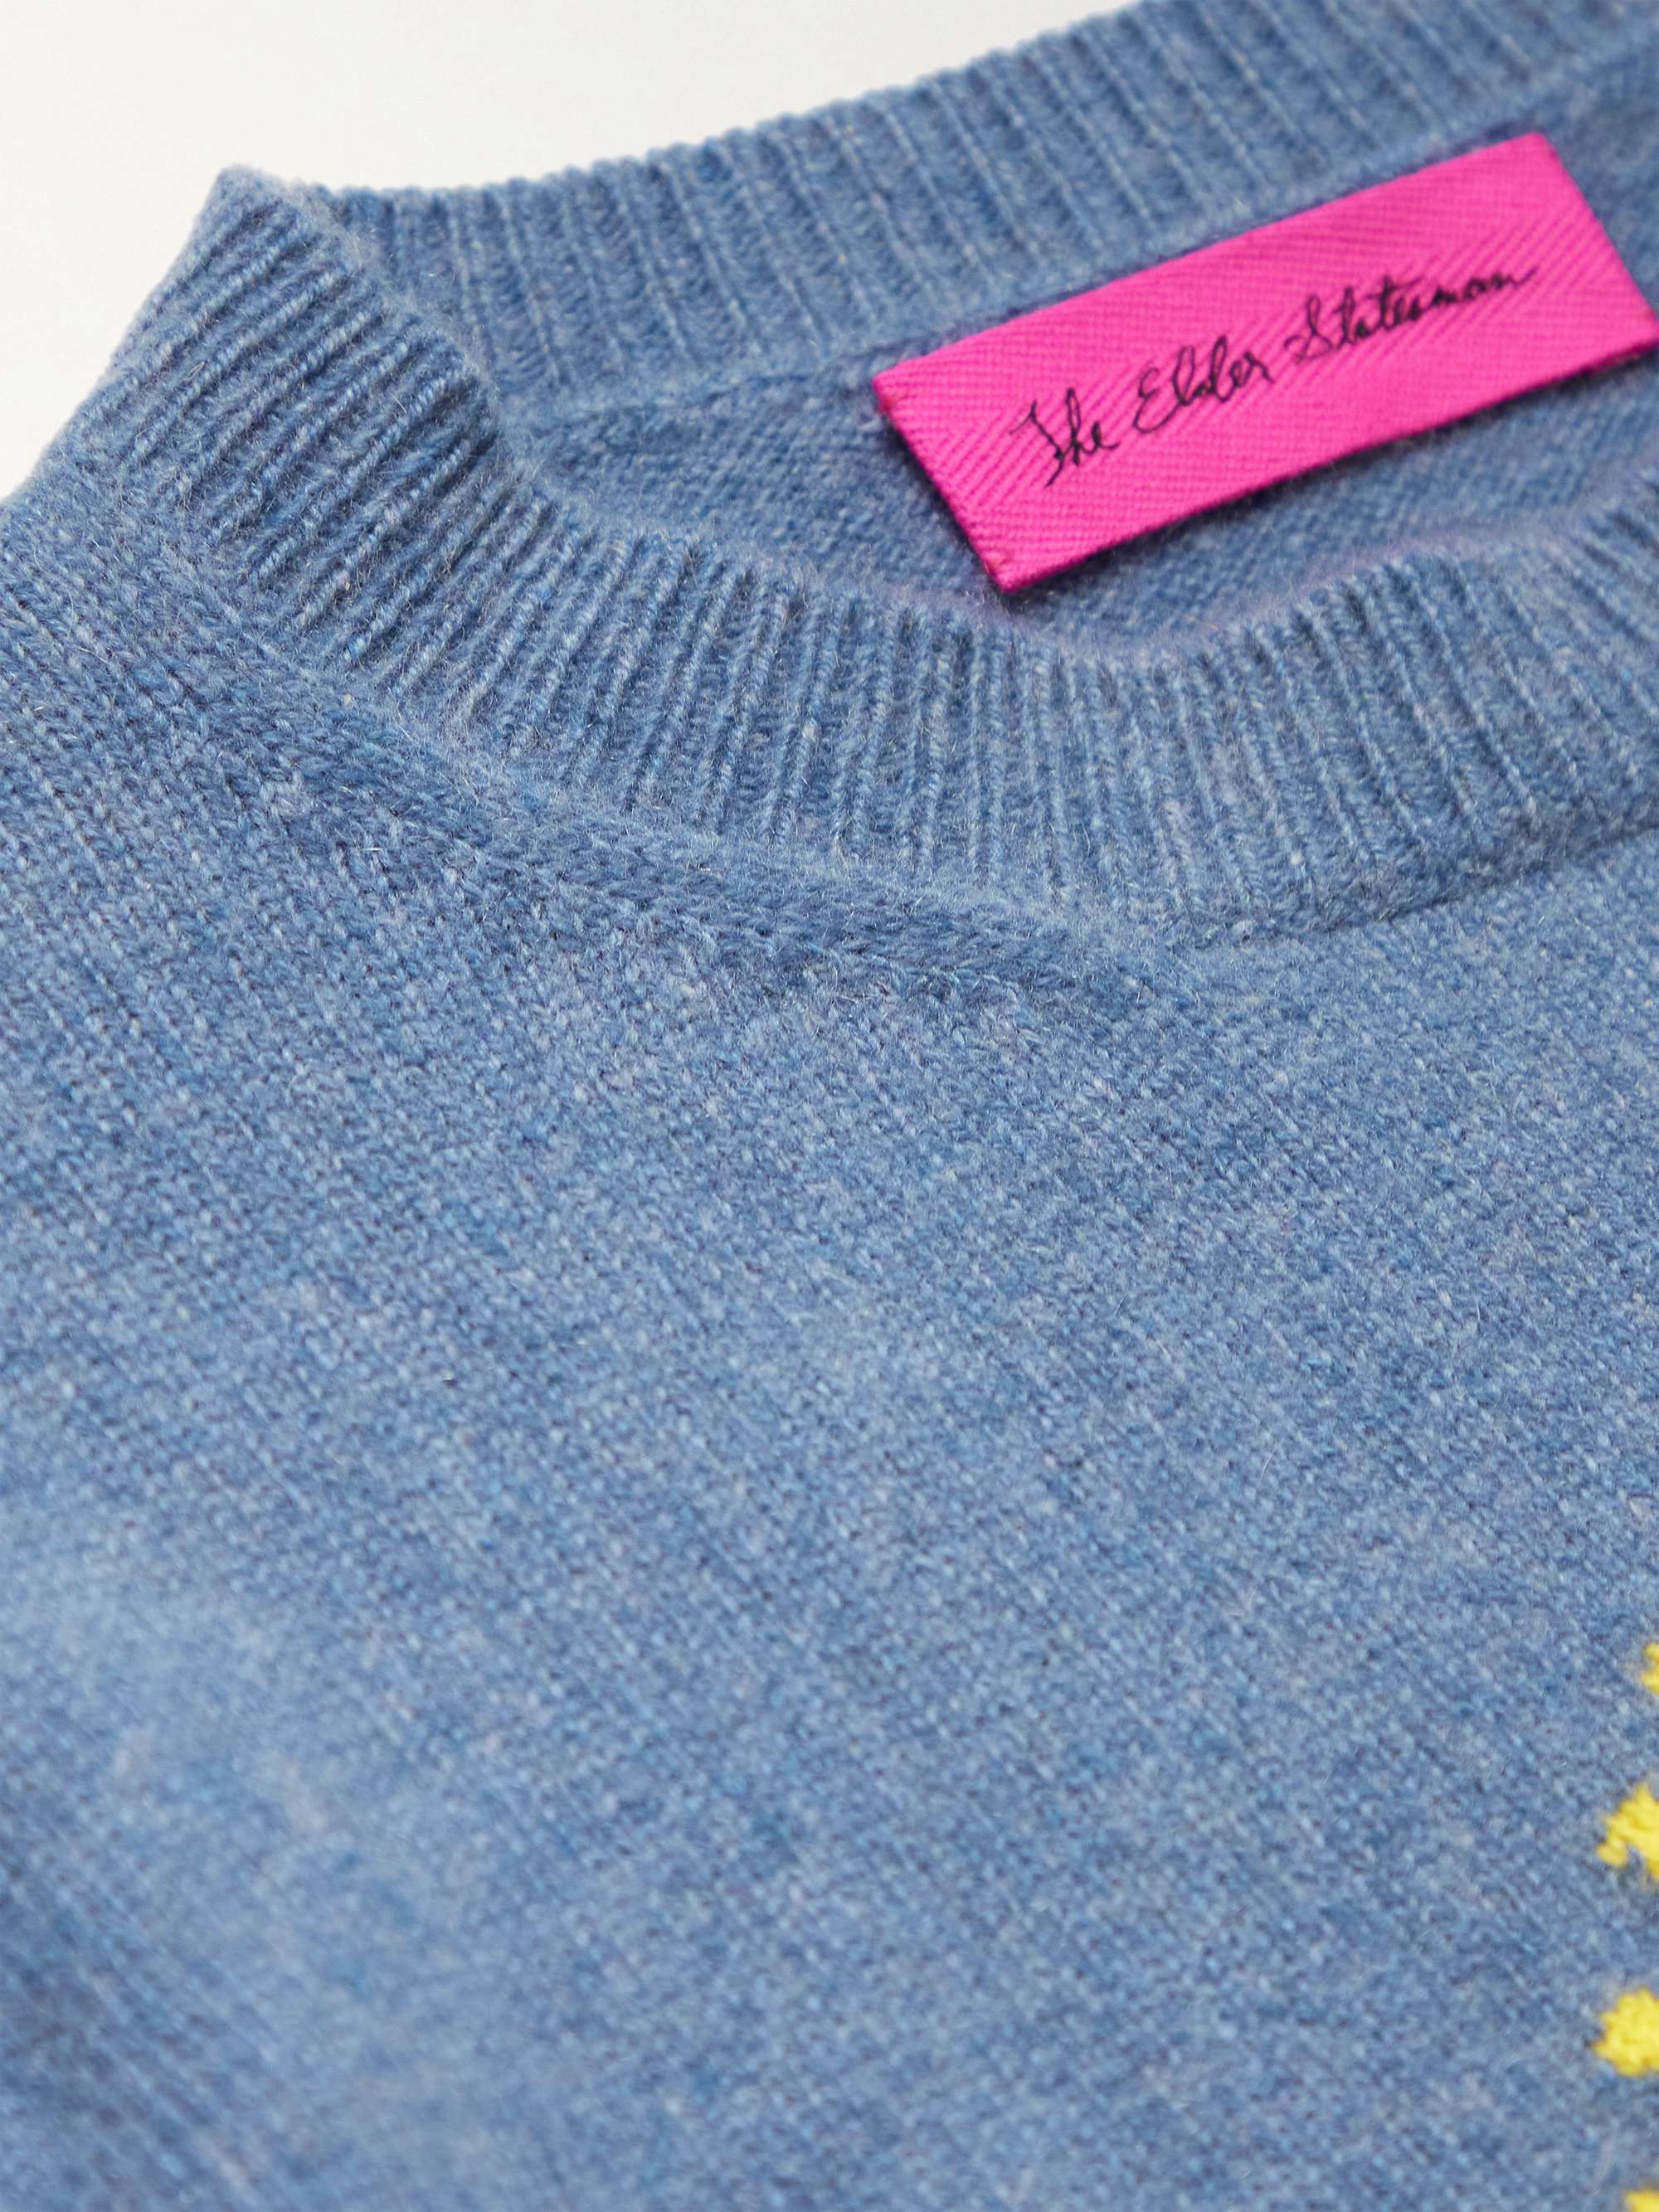 THE ELDER STATESMAN Technicolor Sunshine Embroidered Cashmere Sweater